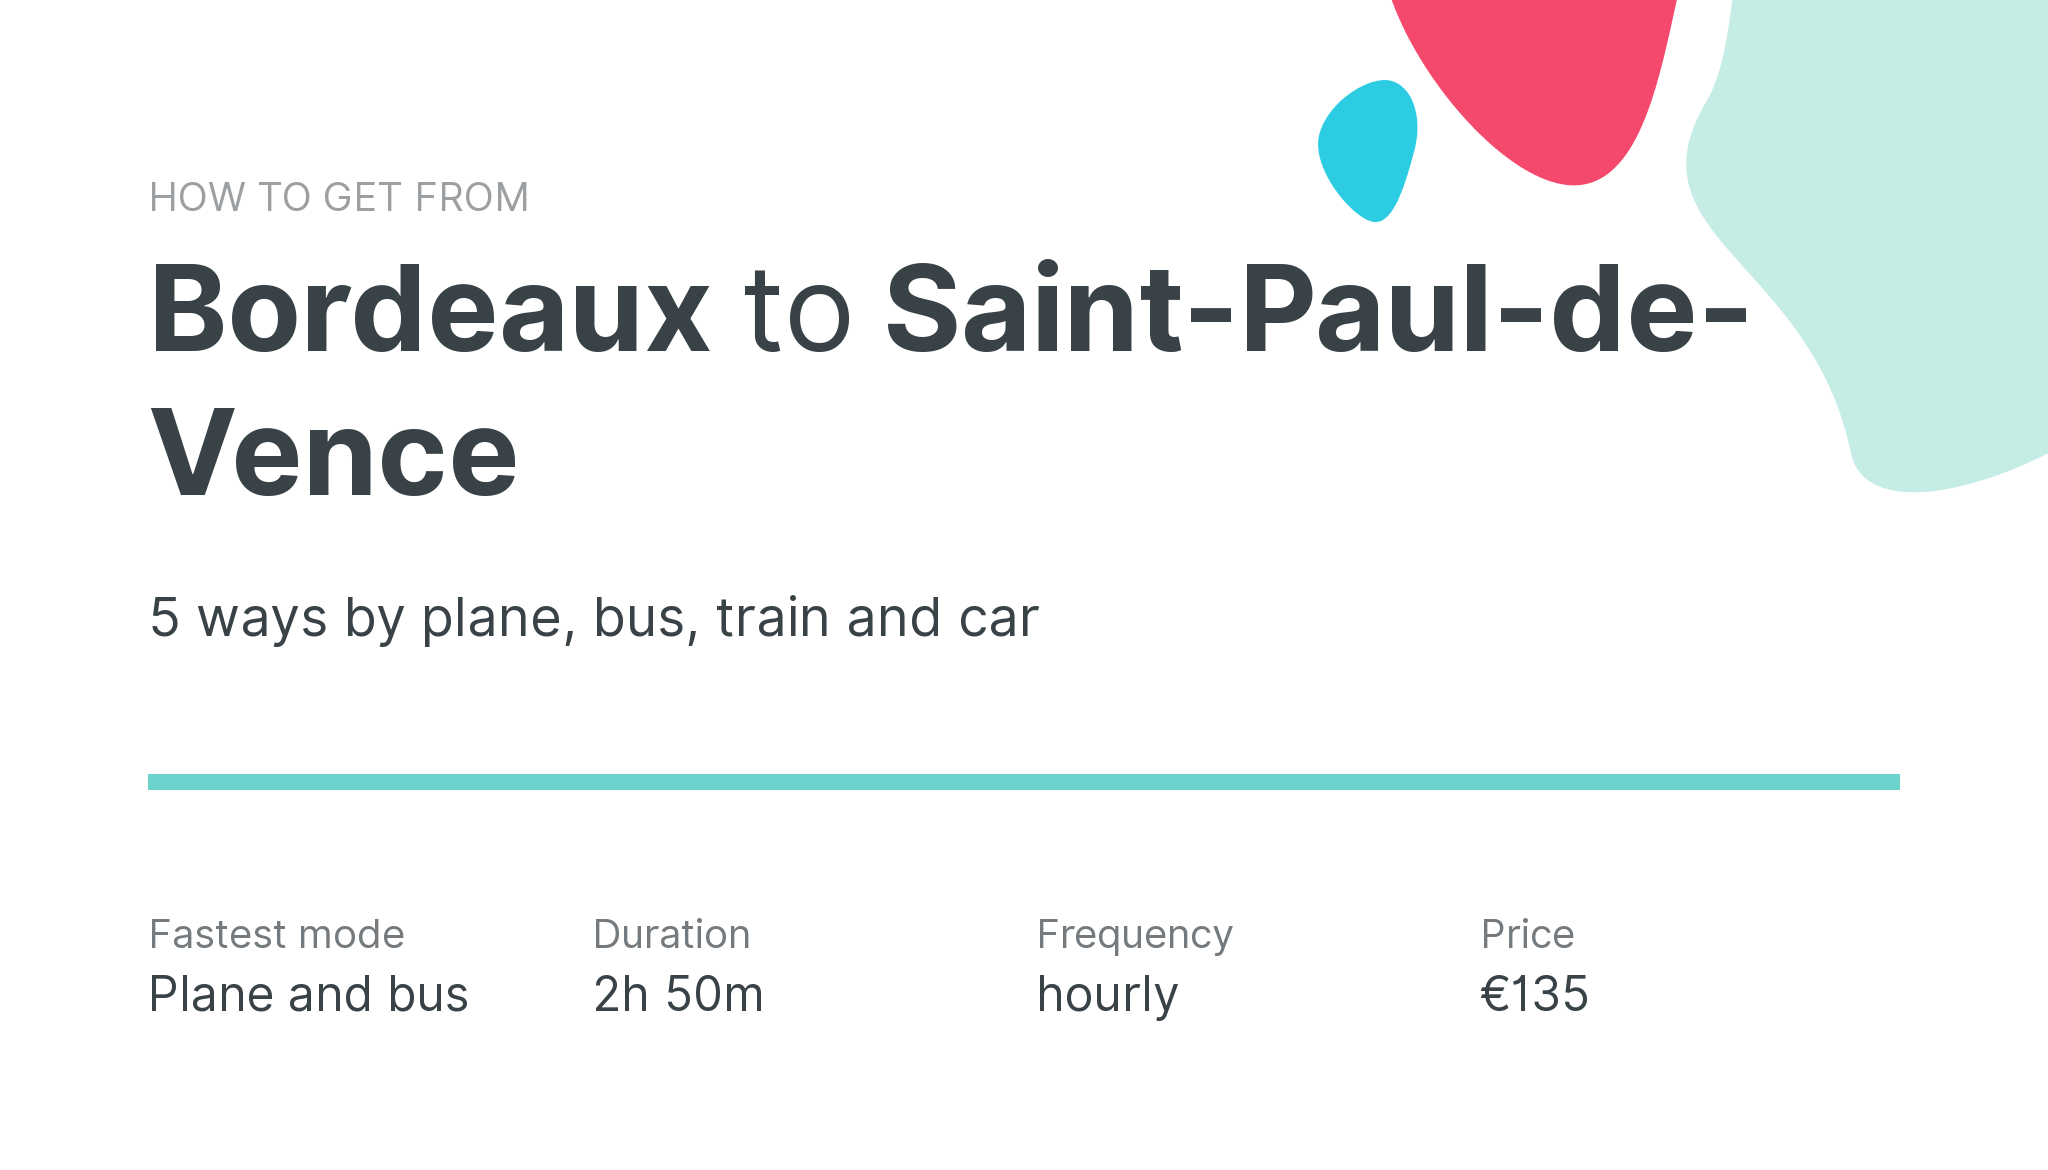 How do I get from Bordeaux to Saint-Paul-de-Vence